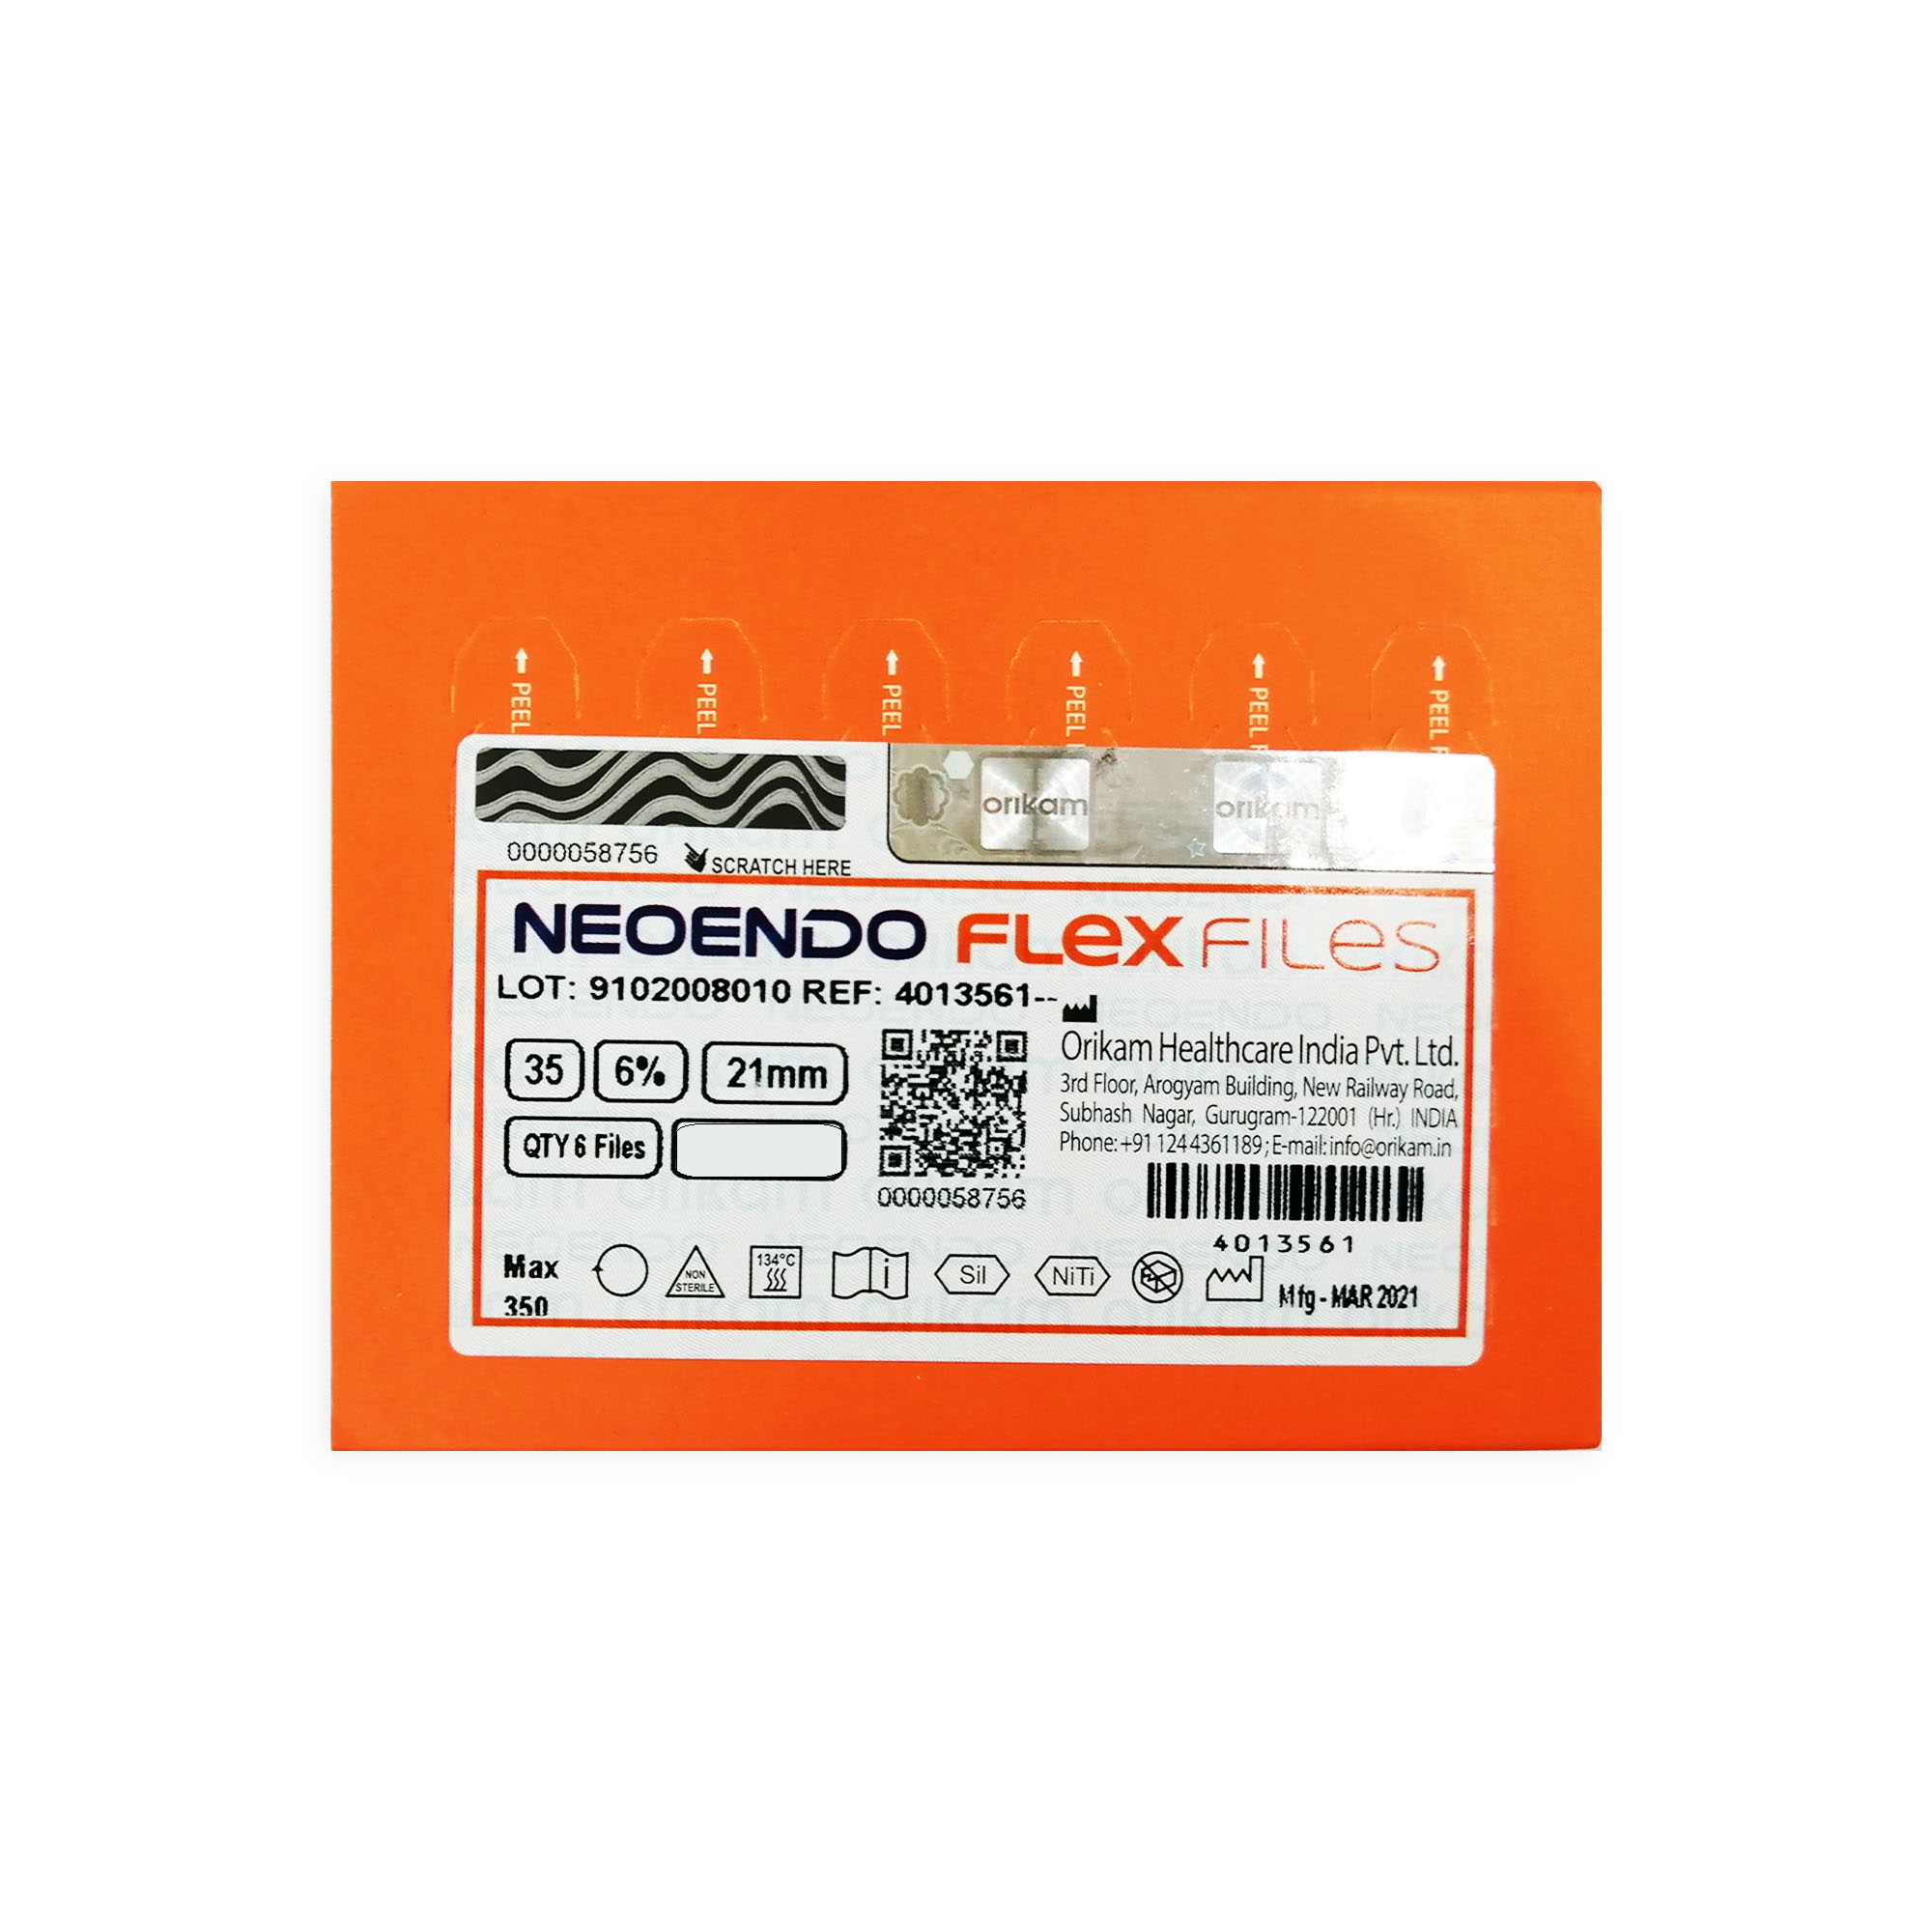 NeoEndo Flex Files 21mm 30/4 Endo Rotary Files